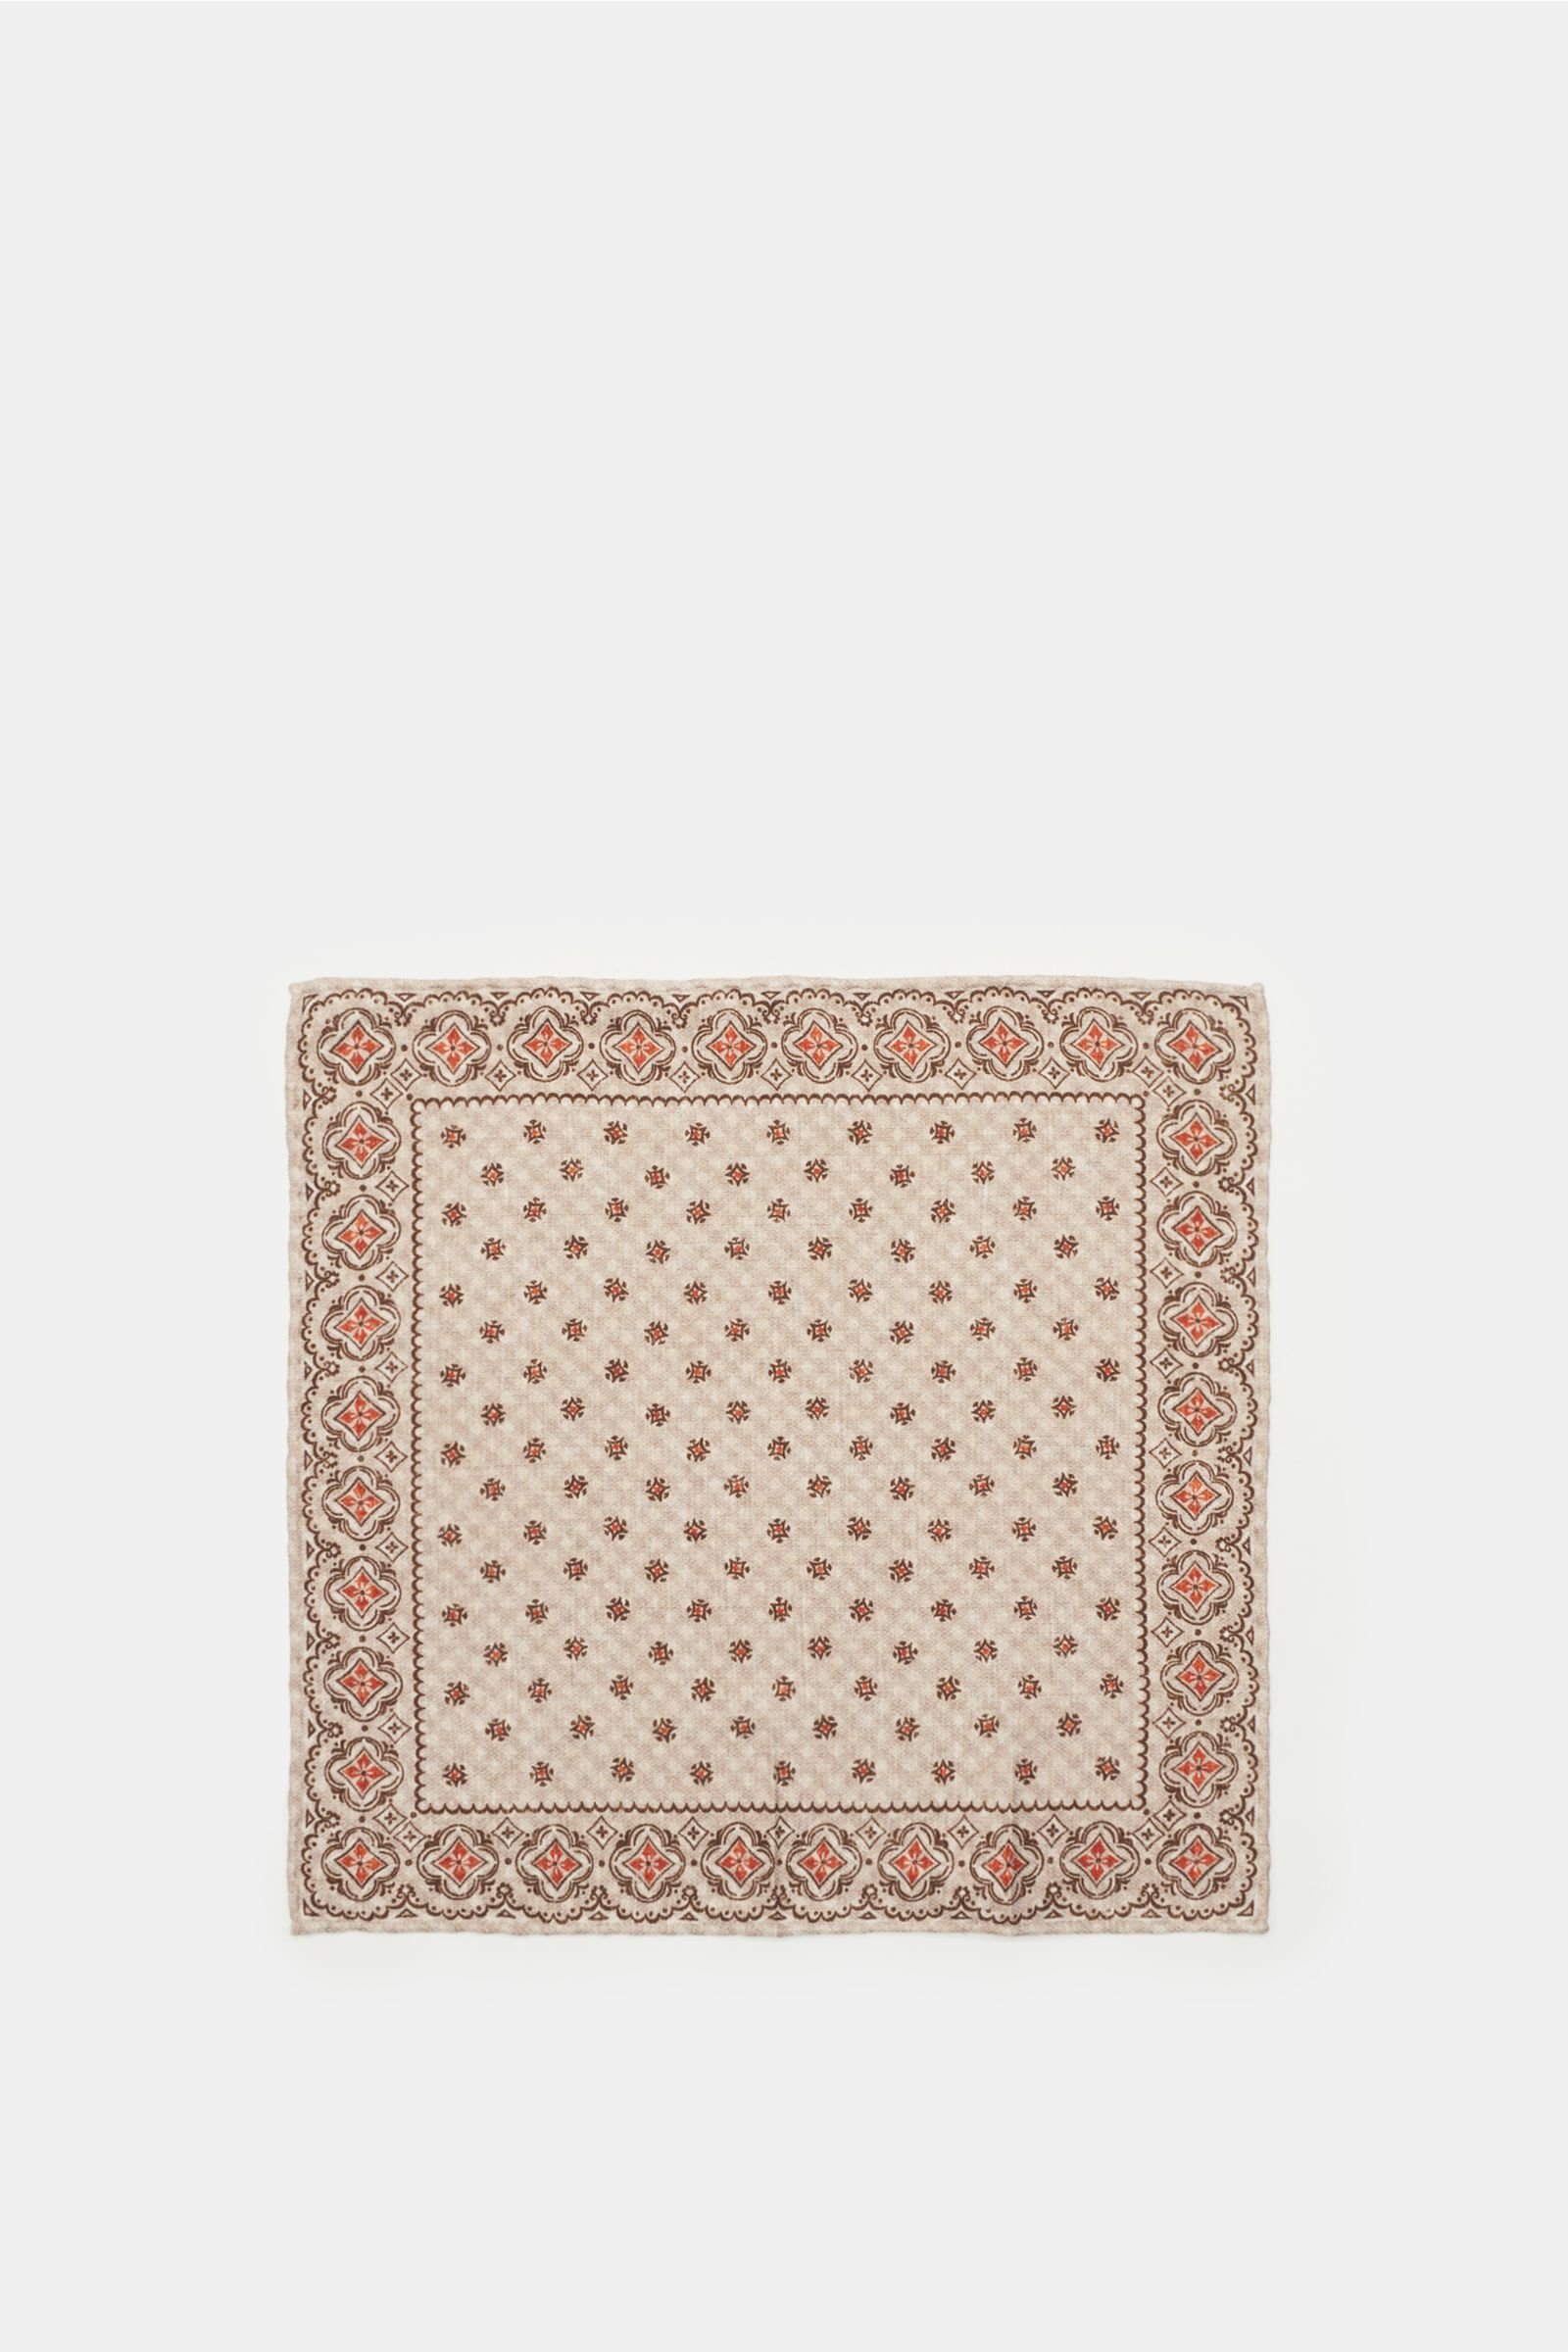 Pocket square beige/dark brown patterned